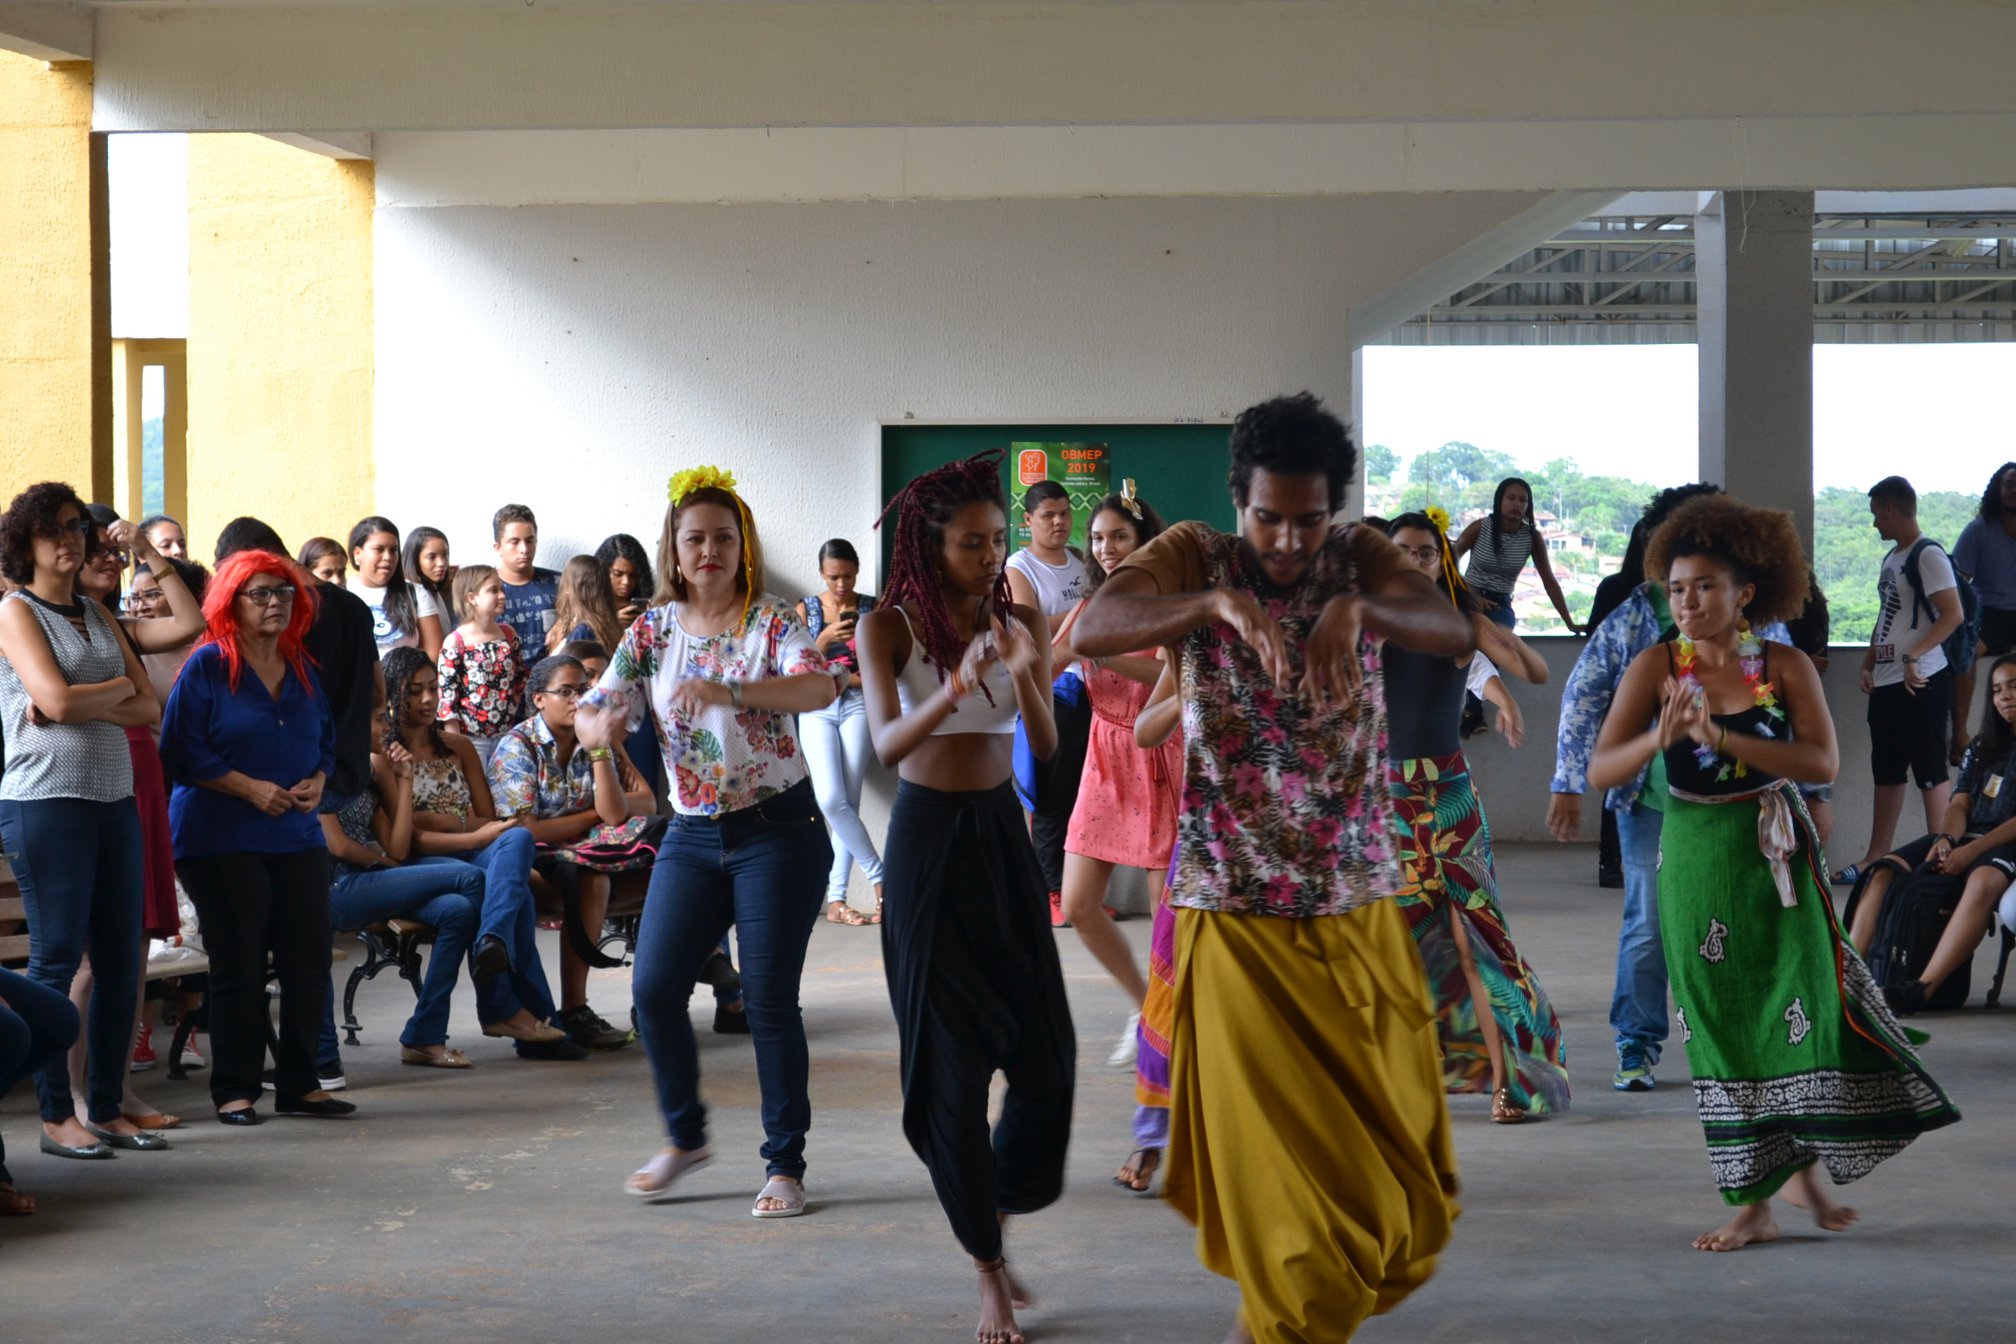 Atividade de calourada no câmpus que desenvolveu a dança afro, tema de um dos projetos de ensino aprovado